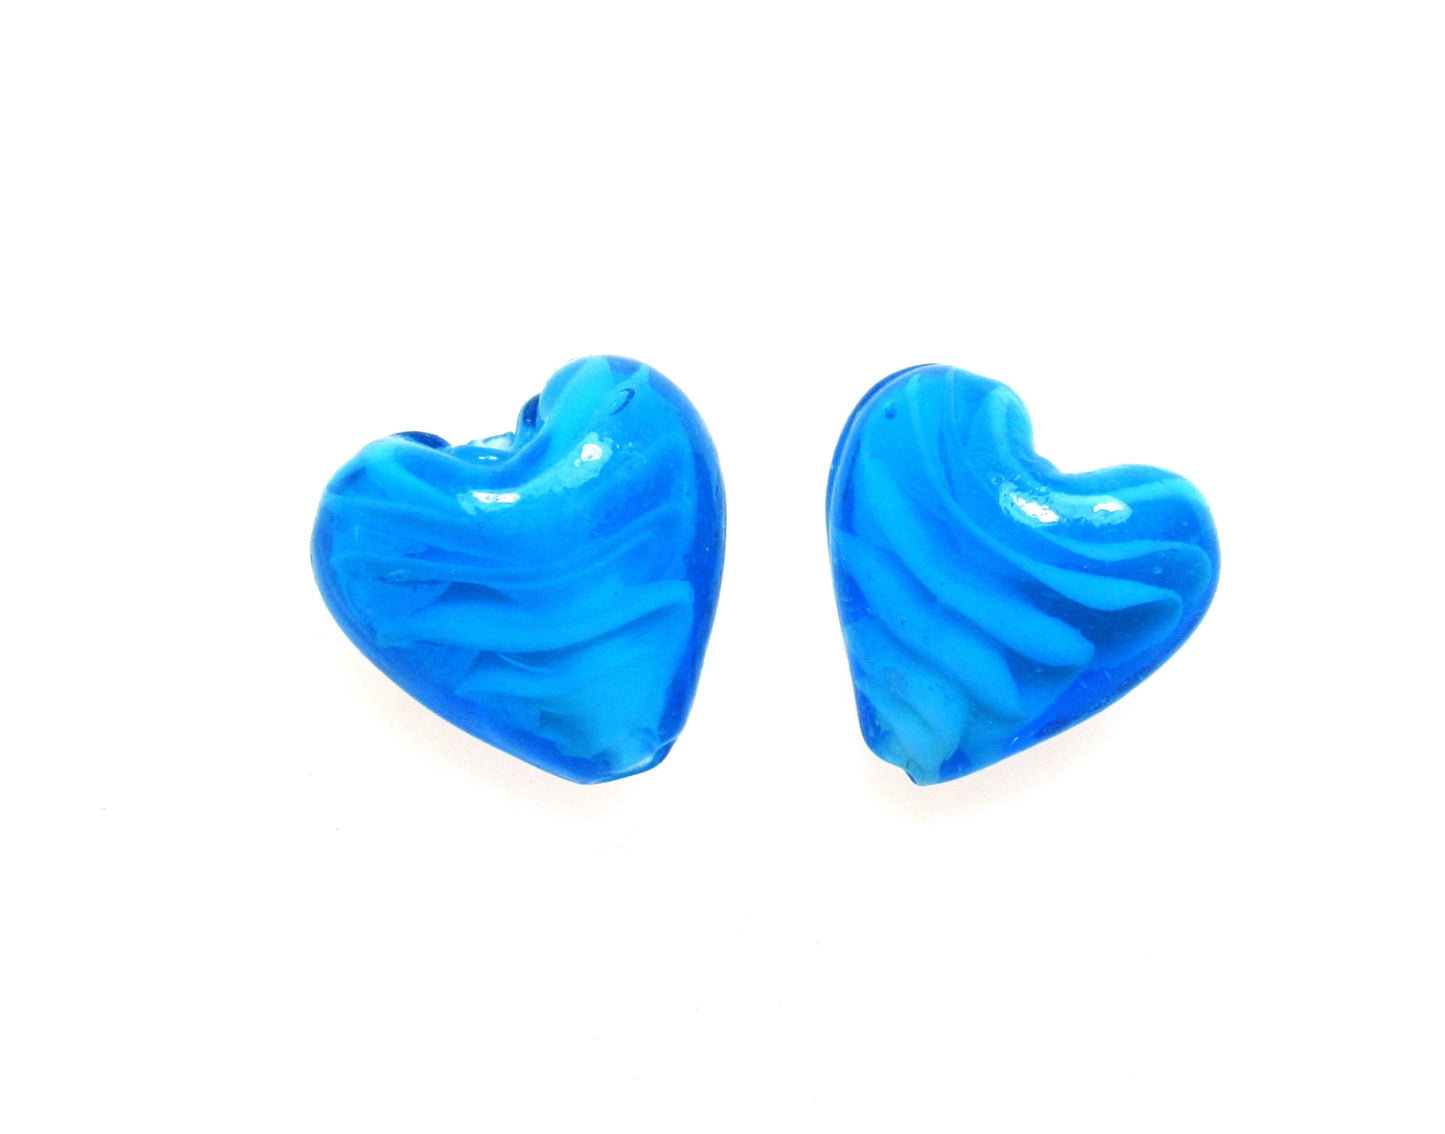 4 Glasperlen Herz hellblau, weißer Farbkern, ca. 2cm, Schmuck und Perlen basteln